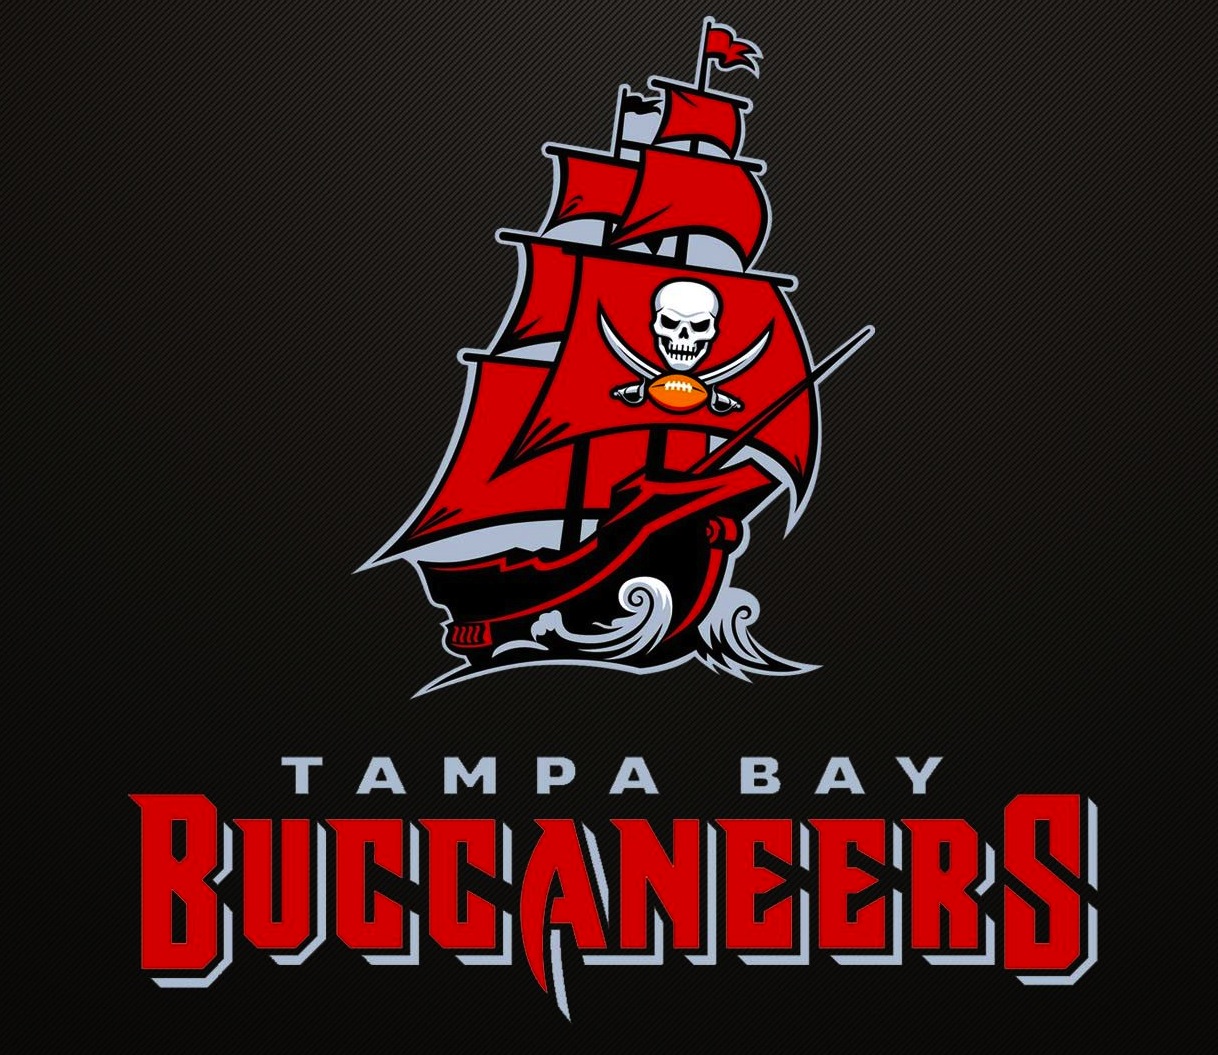 Tampa Bay Buccaneers Team Report